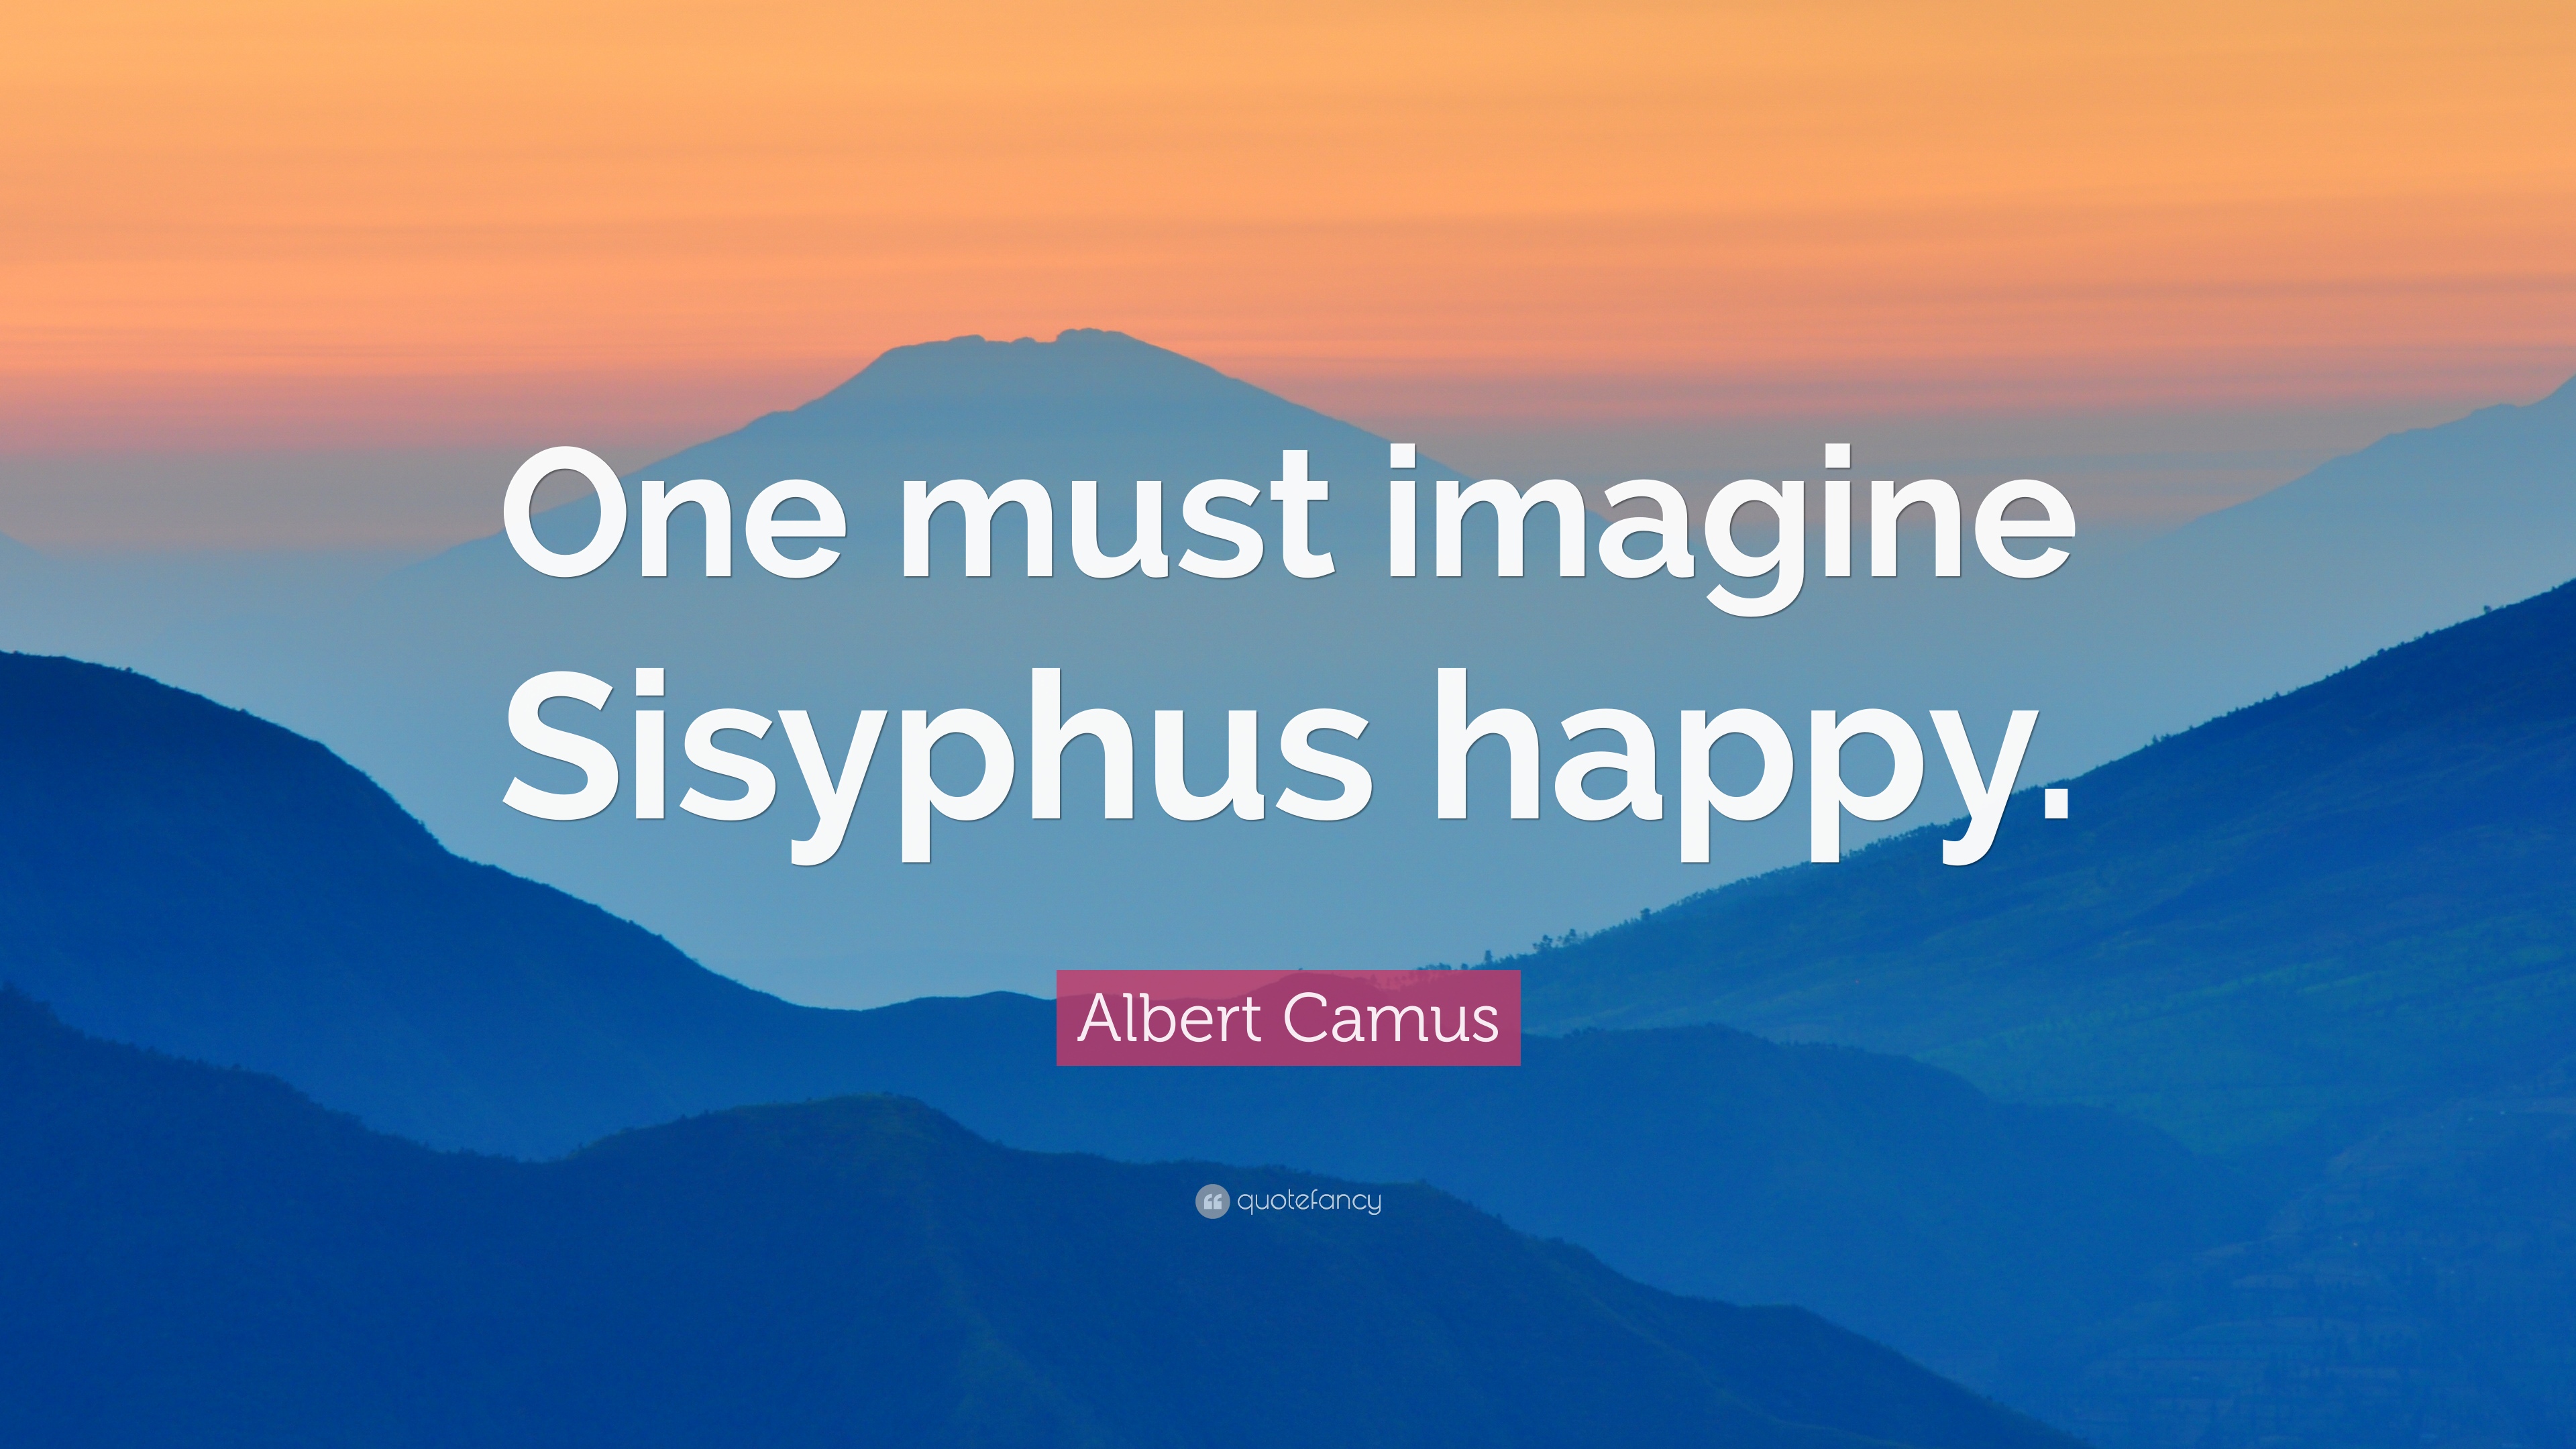 Albert Camus Quote: “One must imagine Sisyphus happy.”